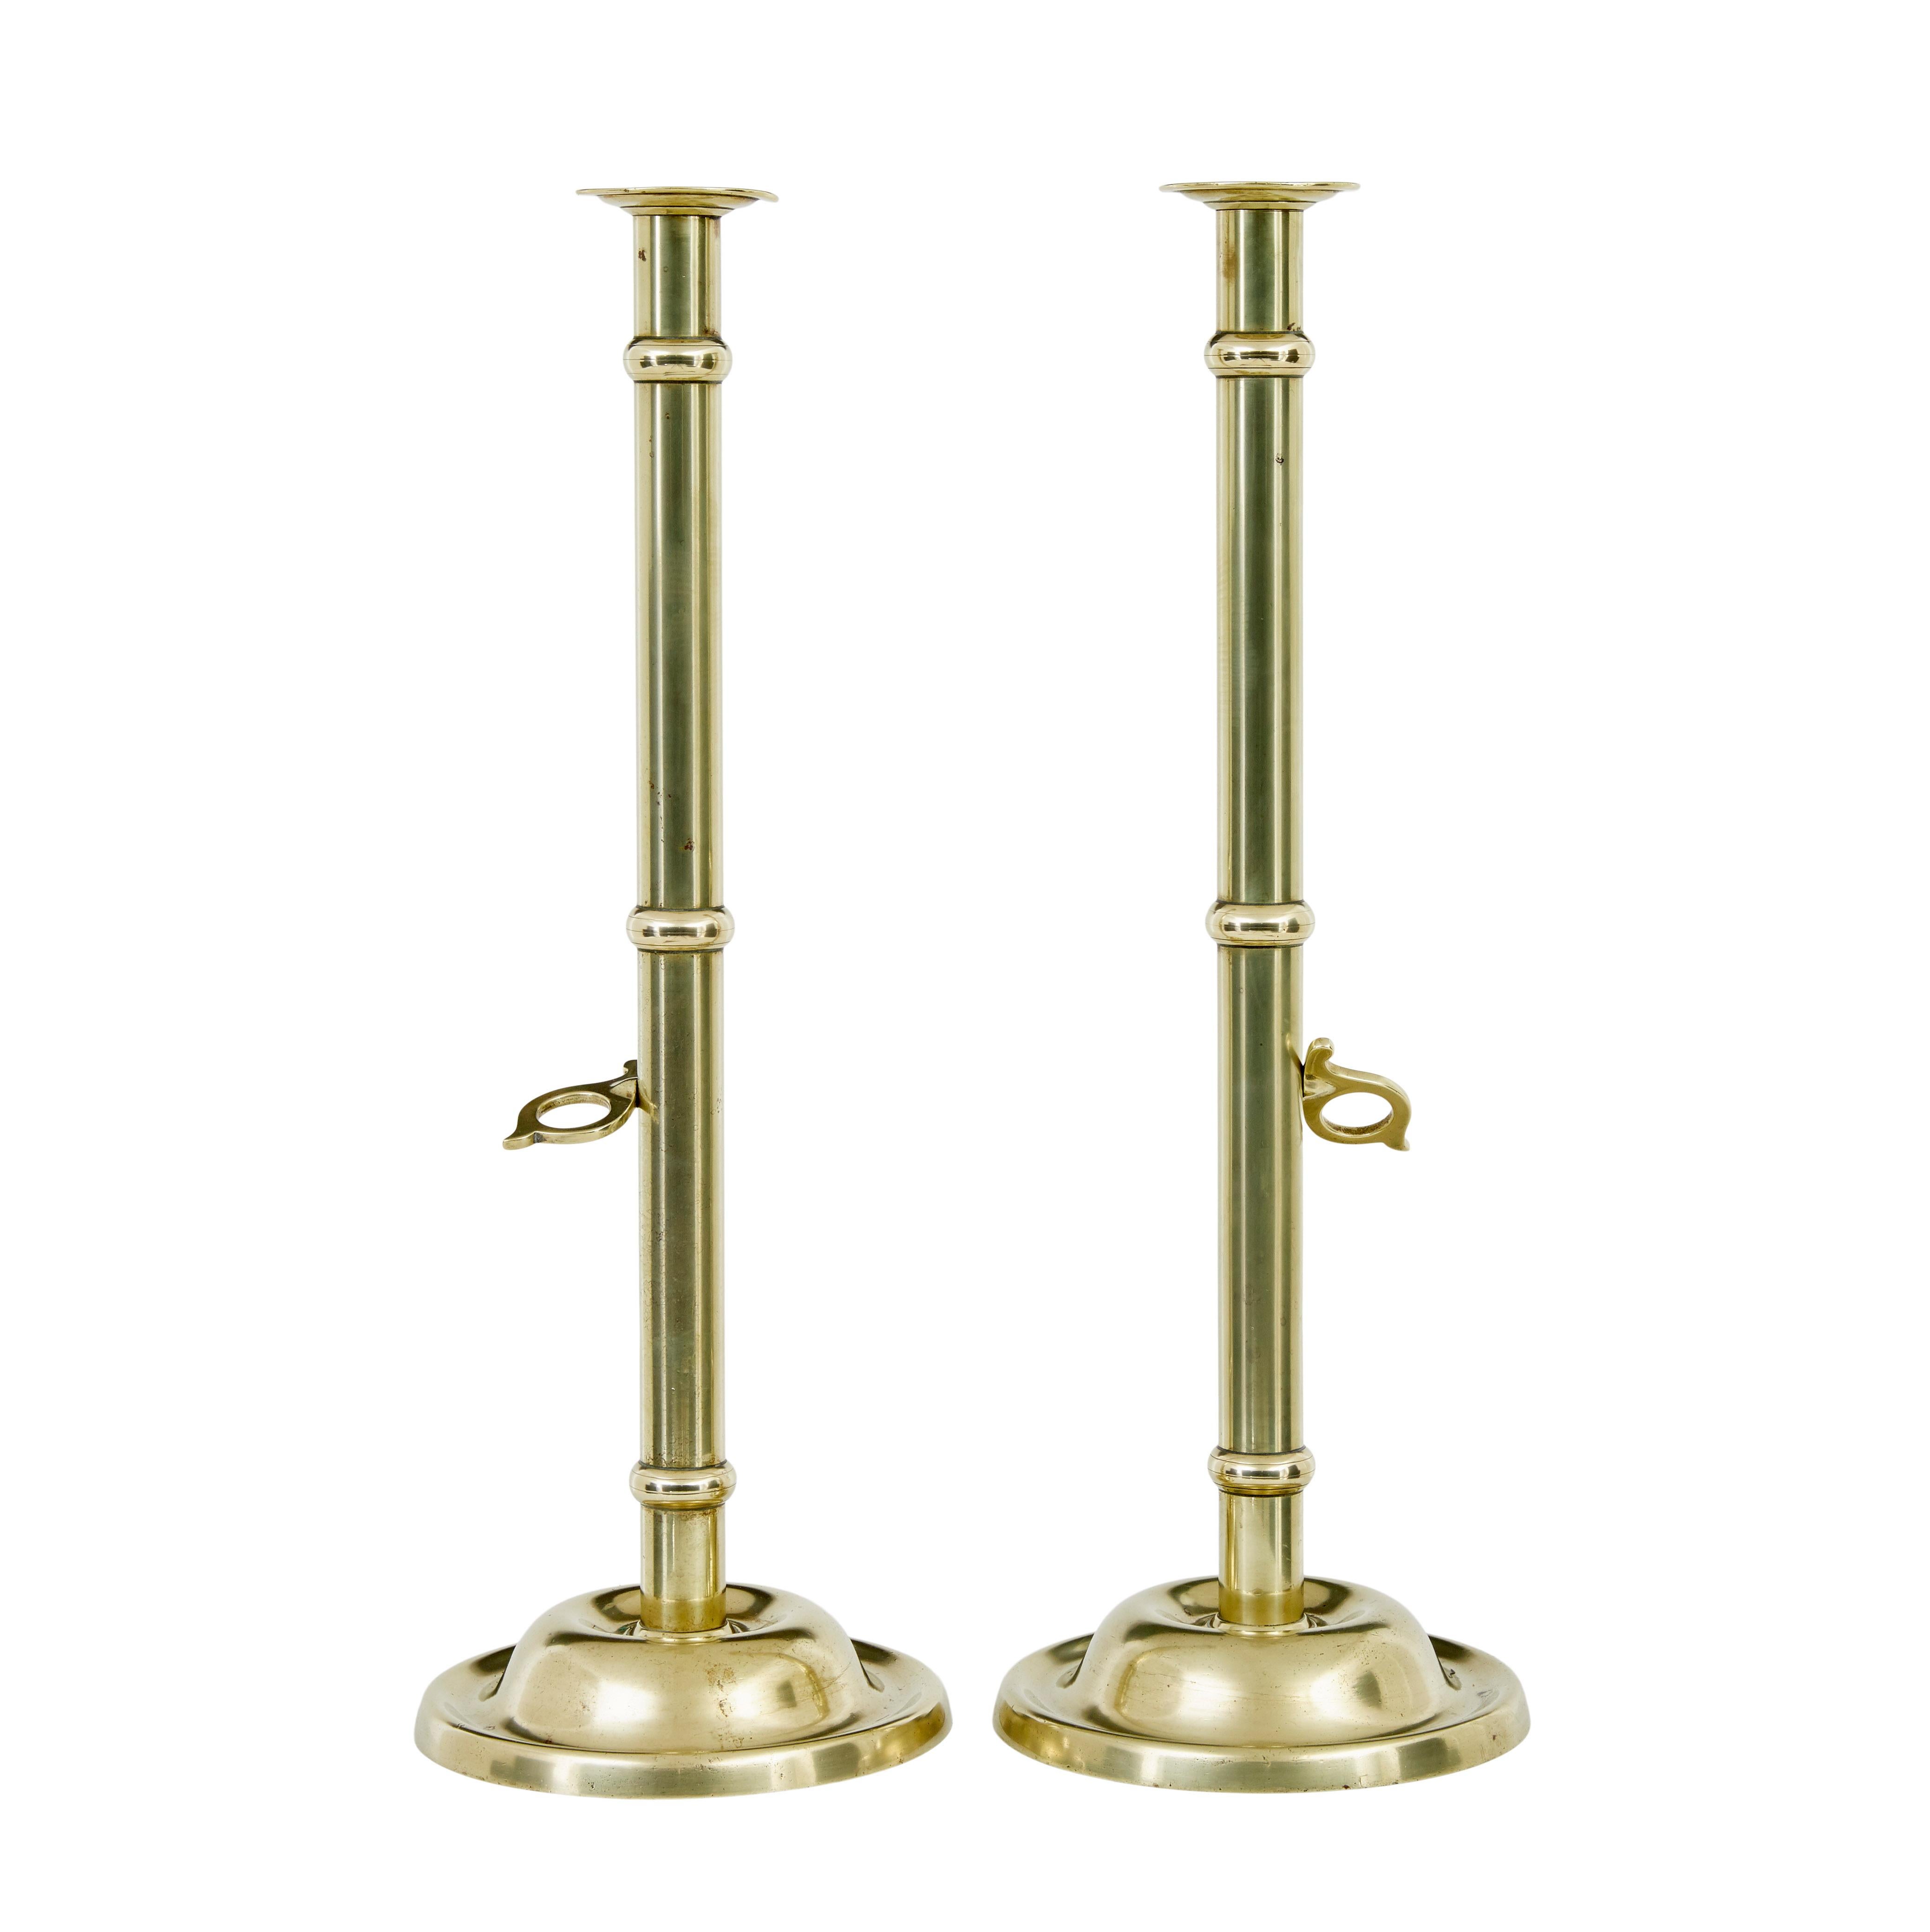 Paar kunstgewerbliche Messing-Kerzenhalter aus dem 19. Jahrhundert, um 1890.

Zwei hohe Tisch- oder Kaminleuchter aus massivem Messing in guter Qualität.  Elegantes Paar mit dem zusätzlichen Merkmal eines Schiebeauslösers, der es ermöglicht, die